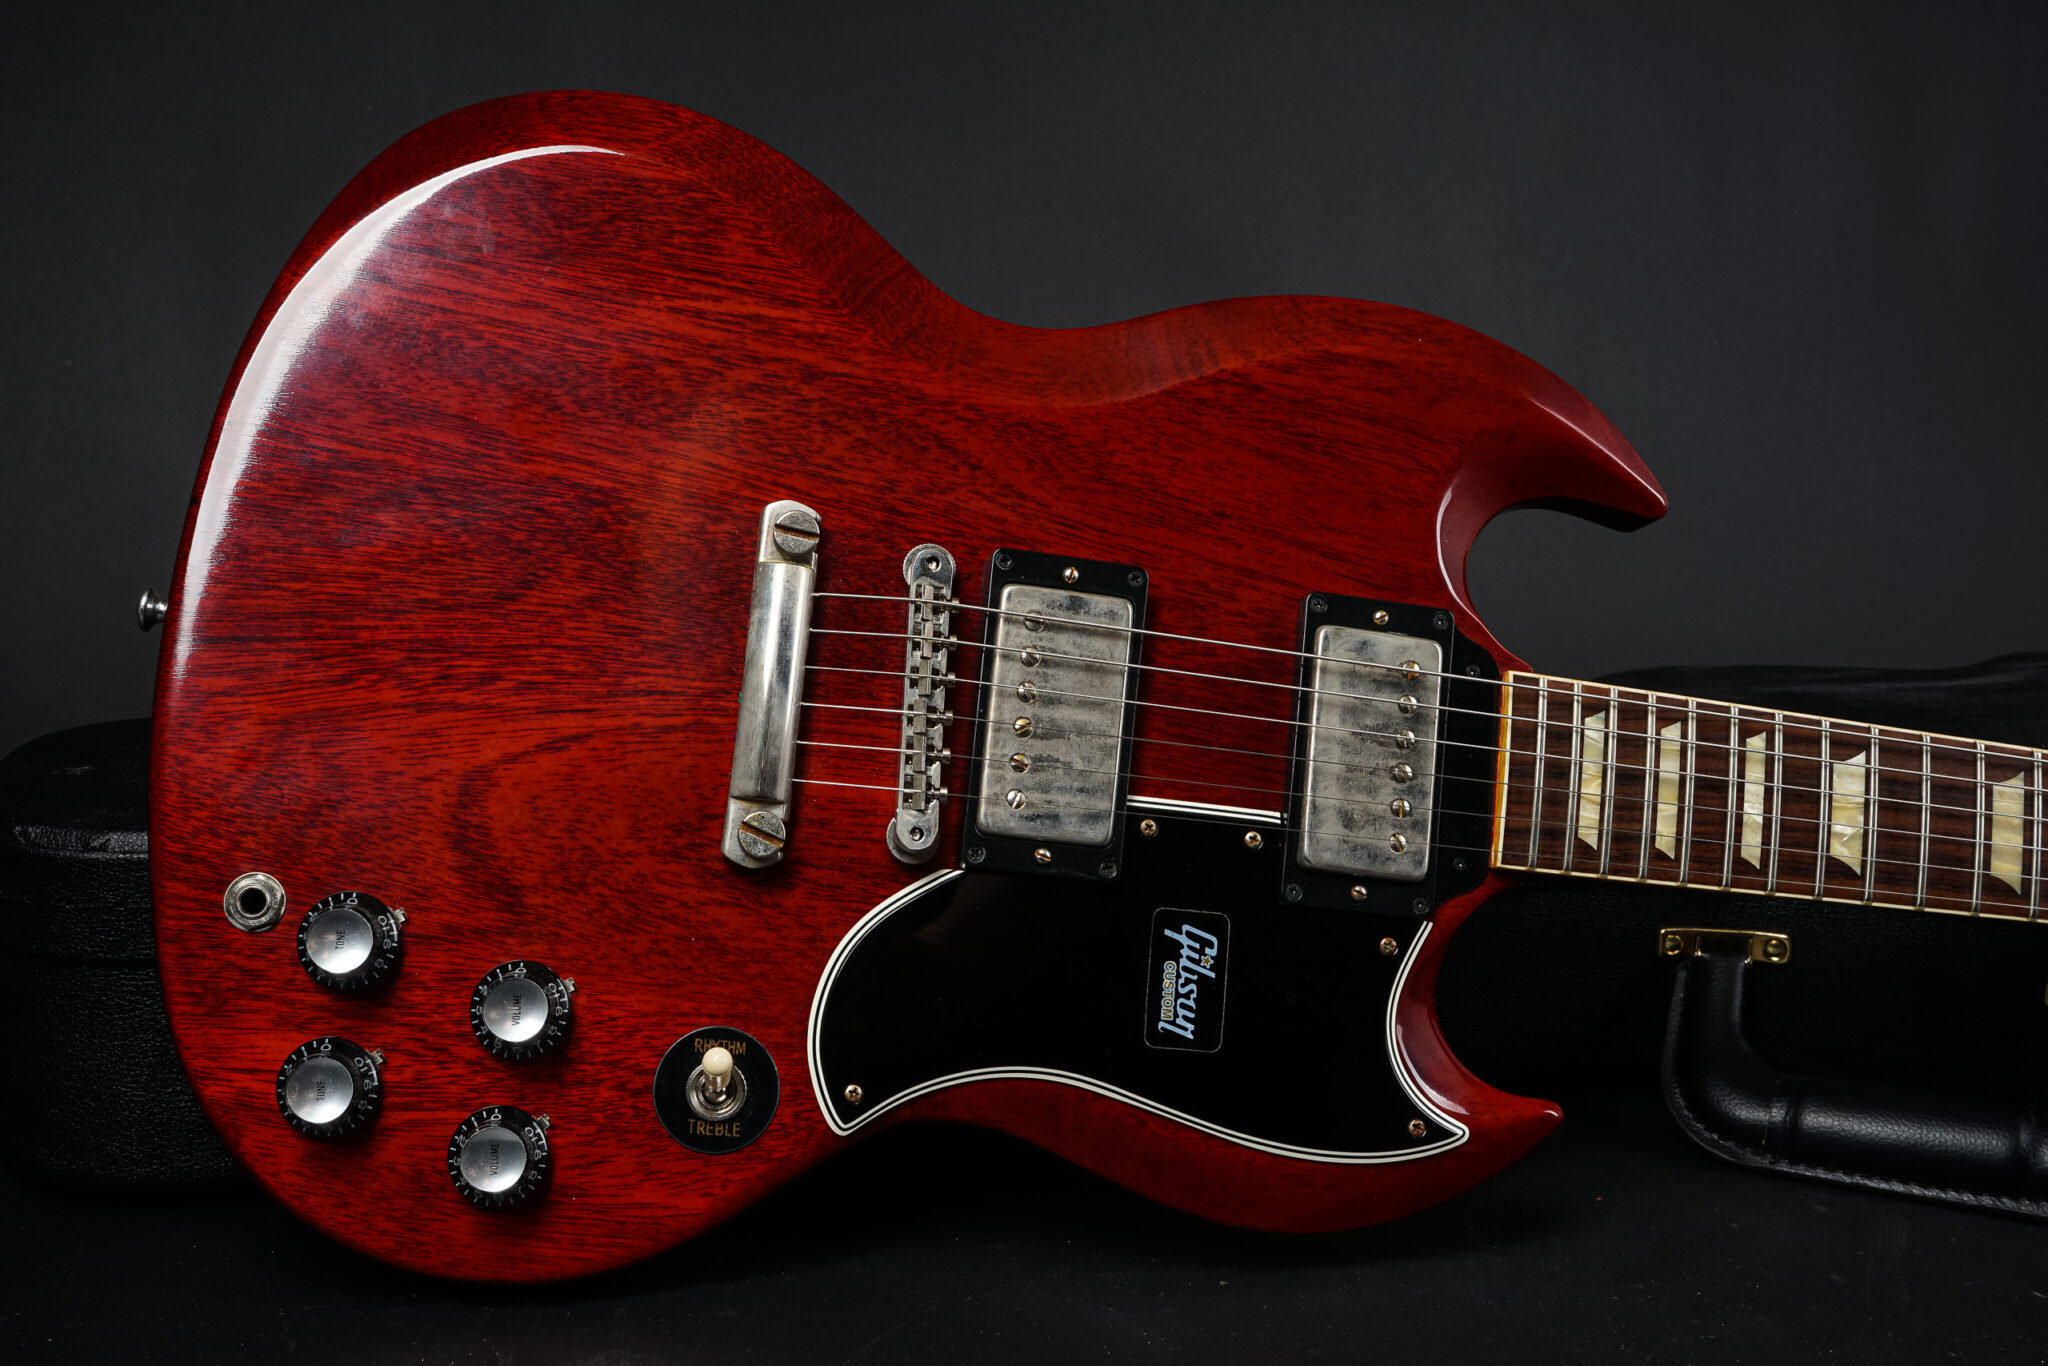 https://guitarpoint.de/app/uploads/products/2019-gibson-sg-standard-61-reissue-vos-cherry/2019-Gibson-SG-Standard-61-VOS-091382-9-2048x1366.jpg